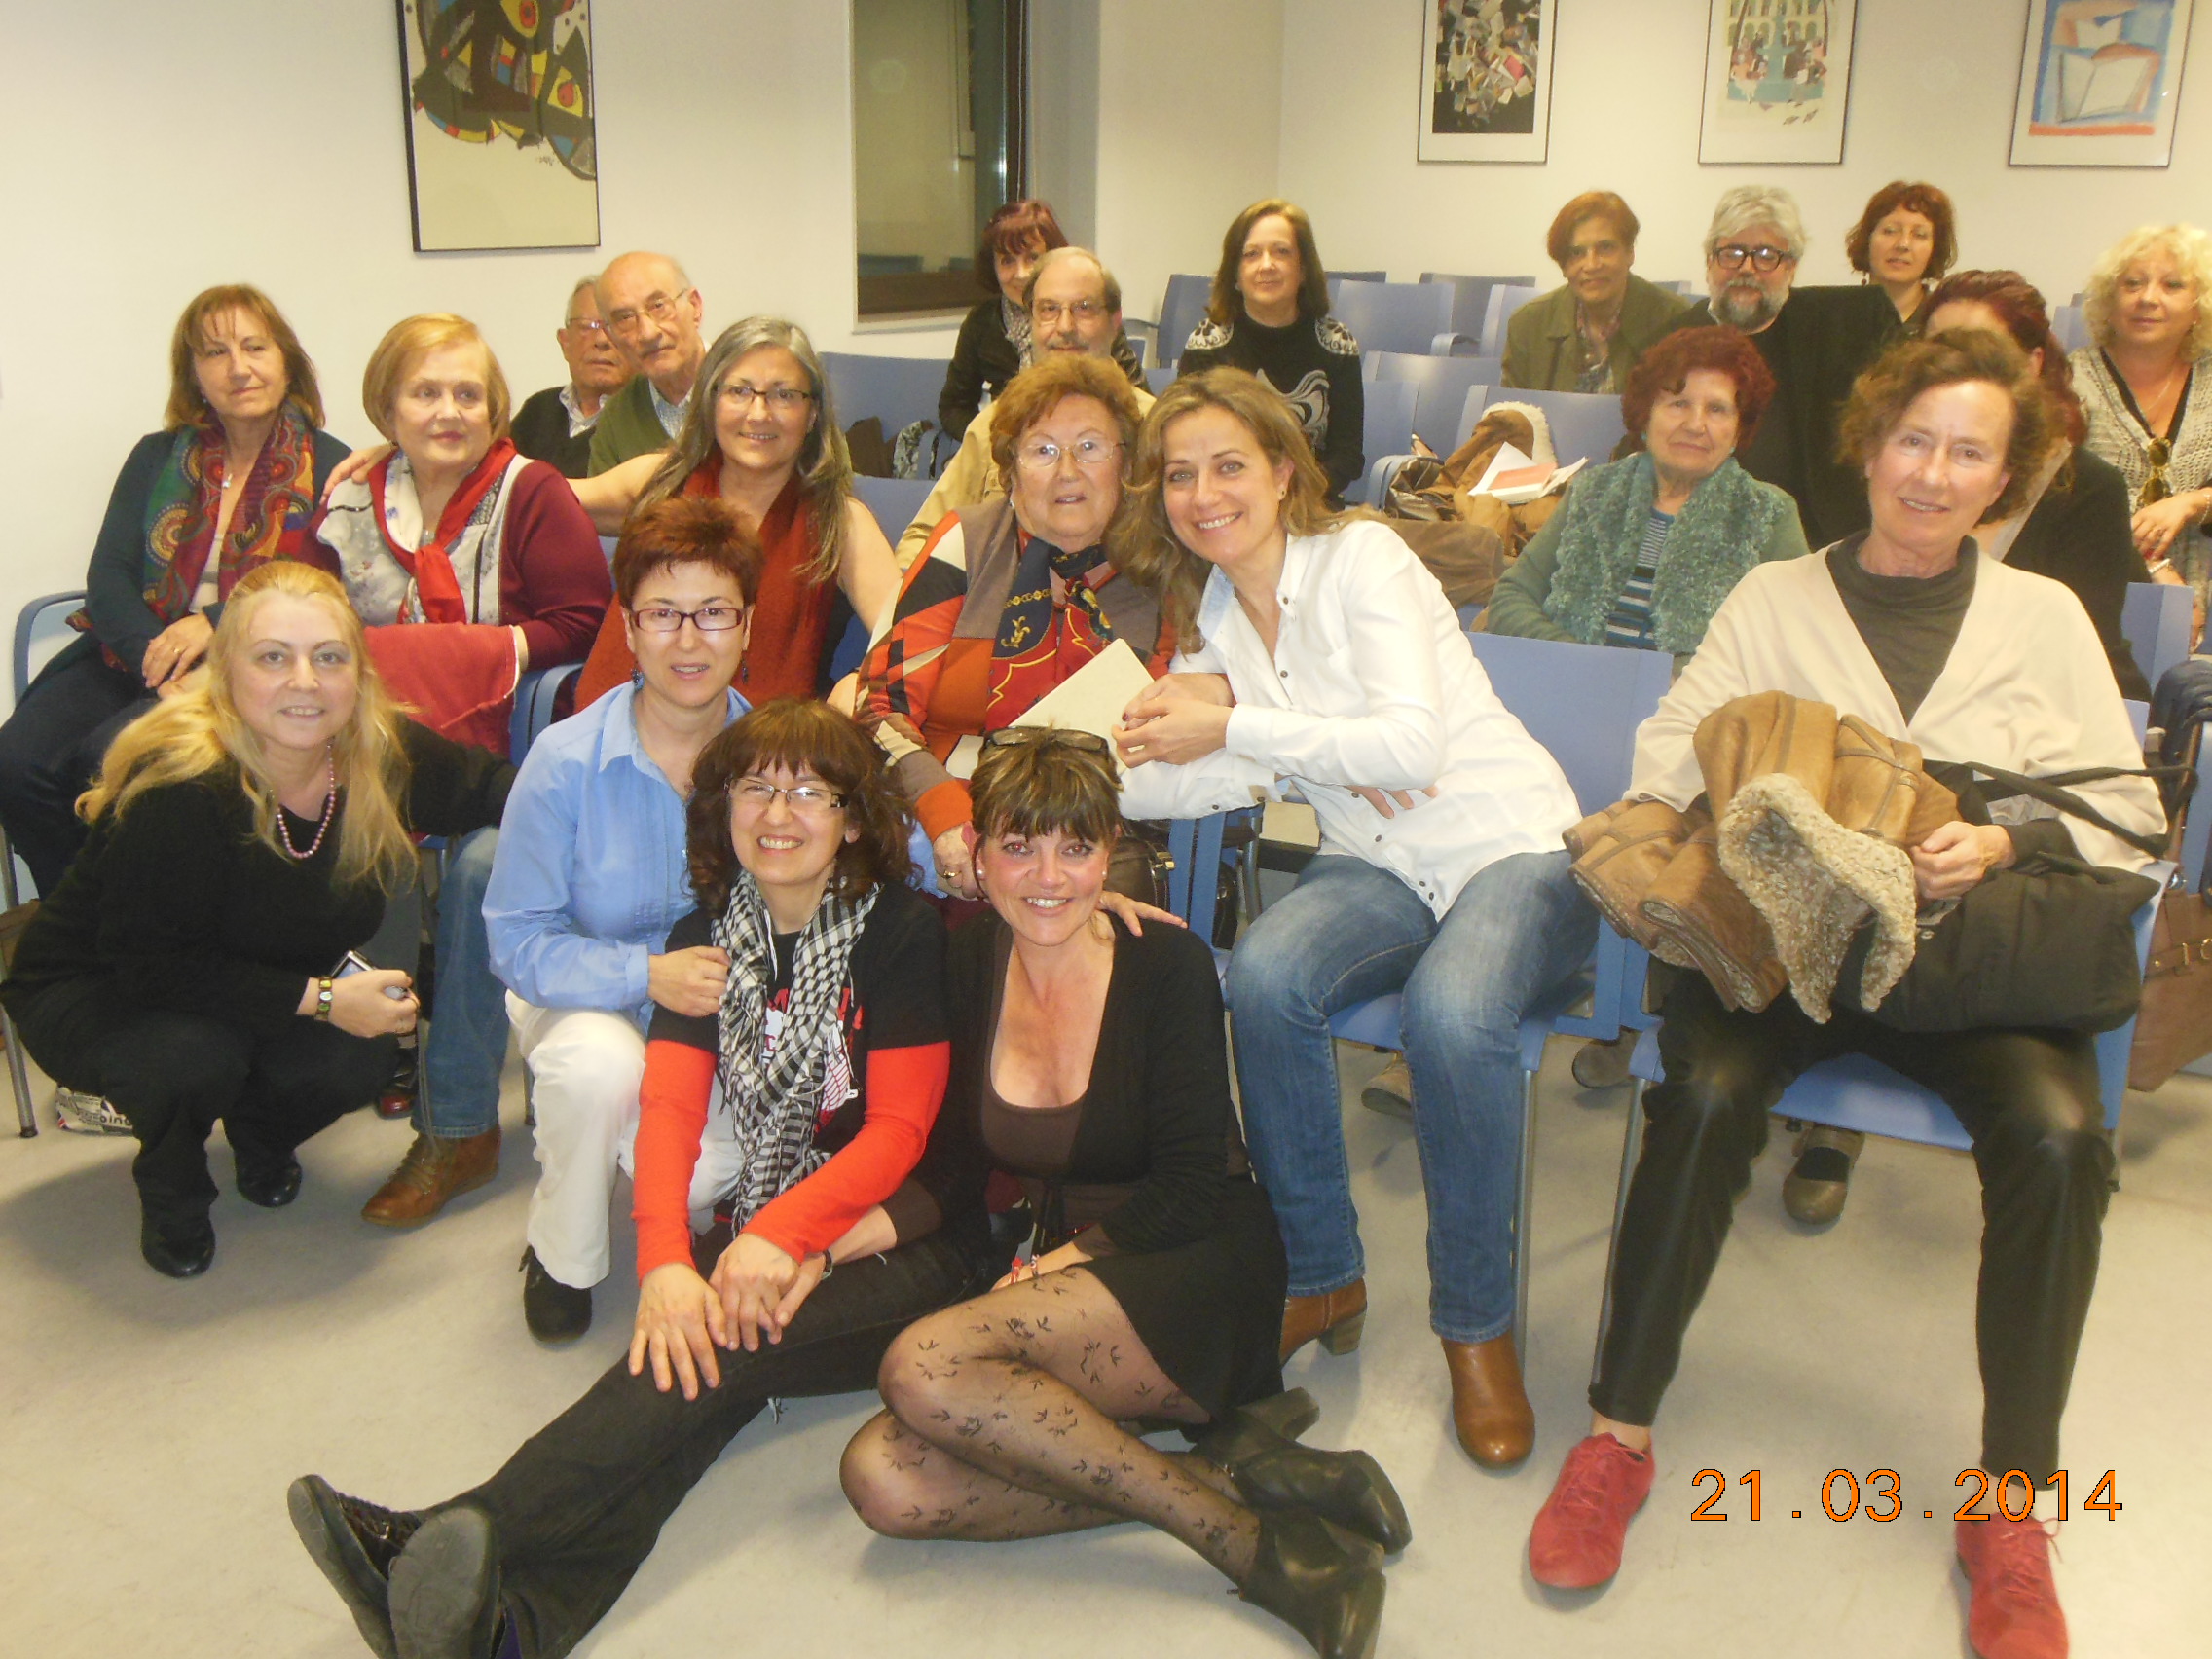 Con amigos/as de la tertulia del Laberinto de Ariadna, Ateneo Barcelonés, marzo 2014